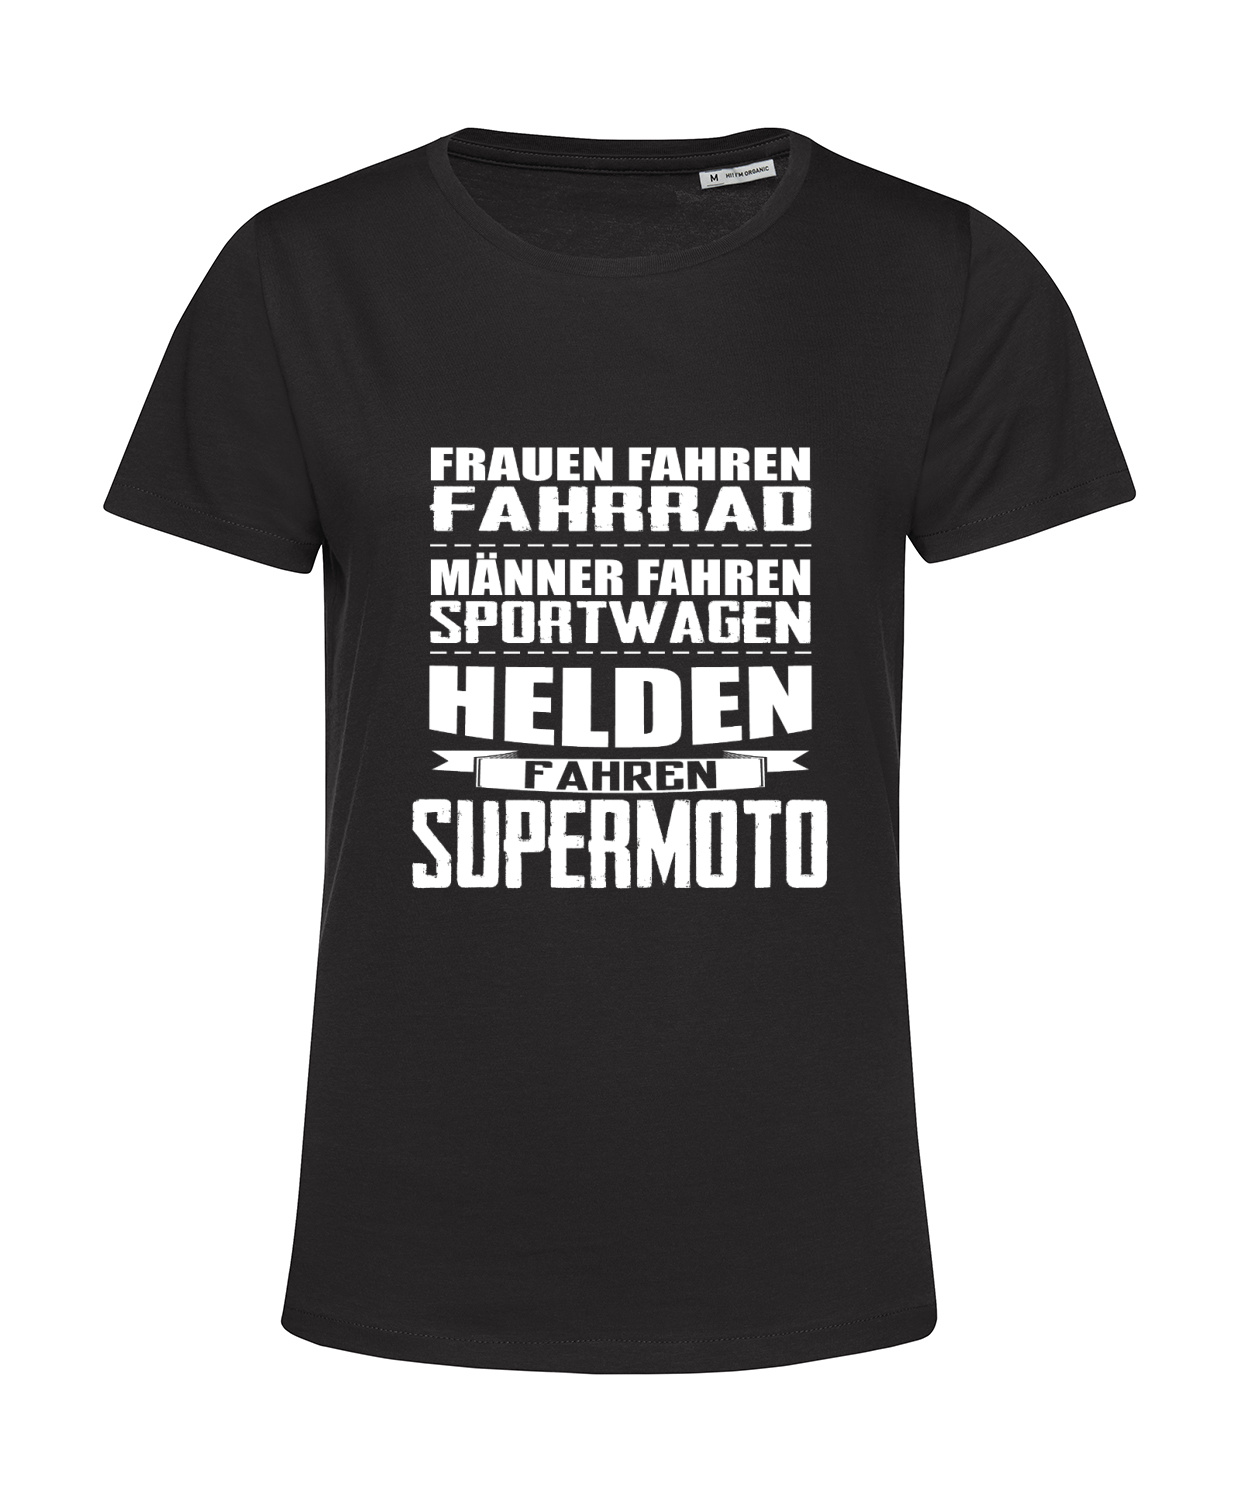 Nachhaltiges T-Shirt Damen Helden fahren Supermoto